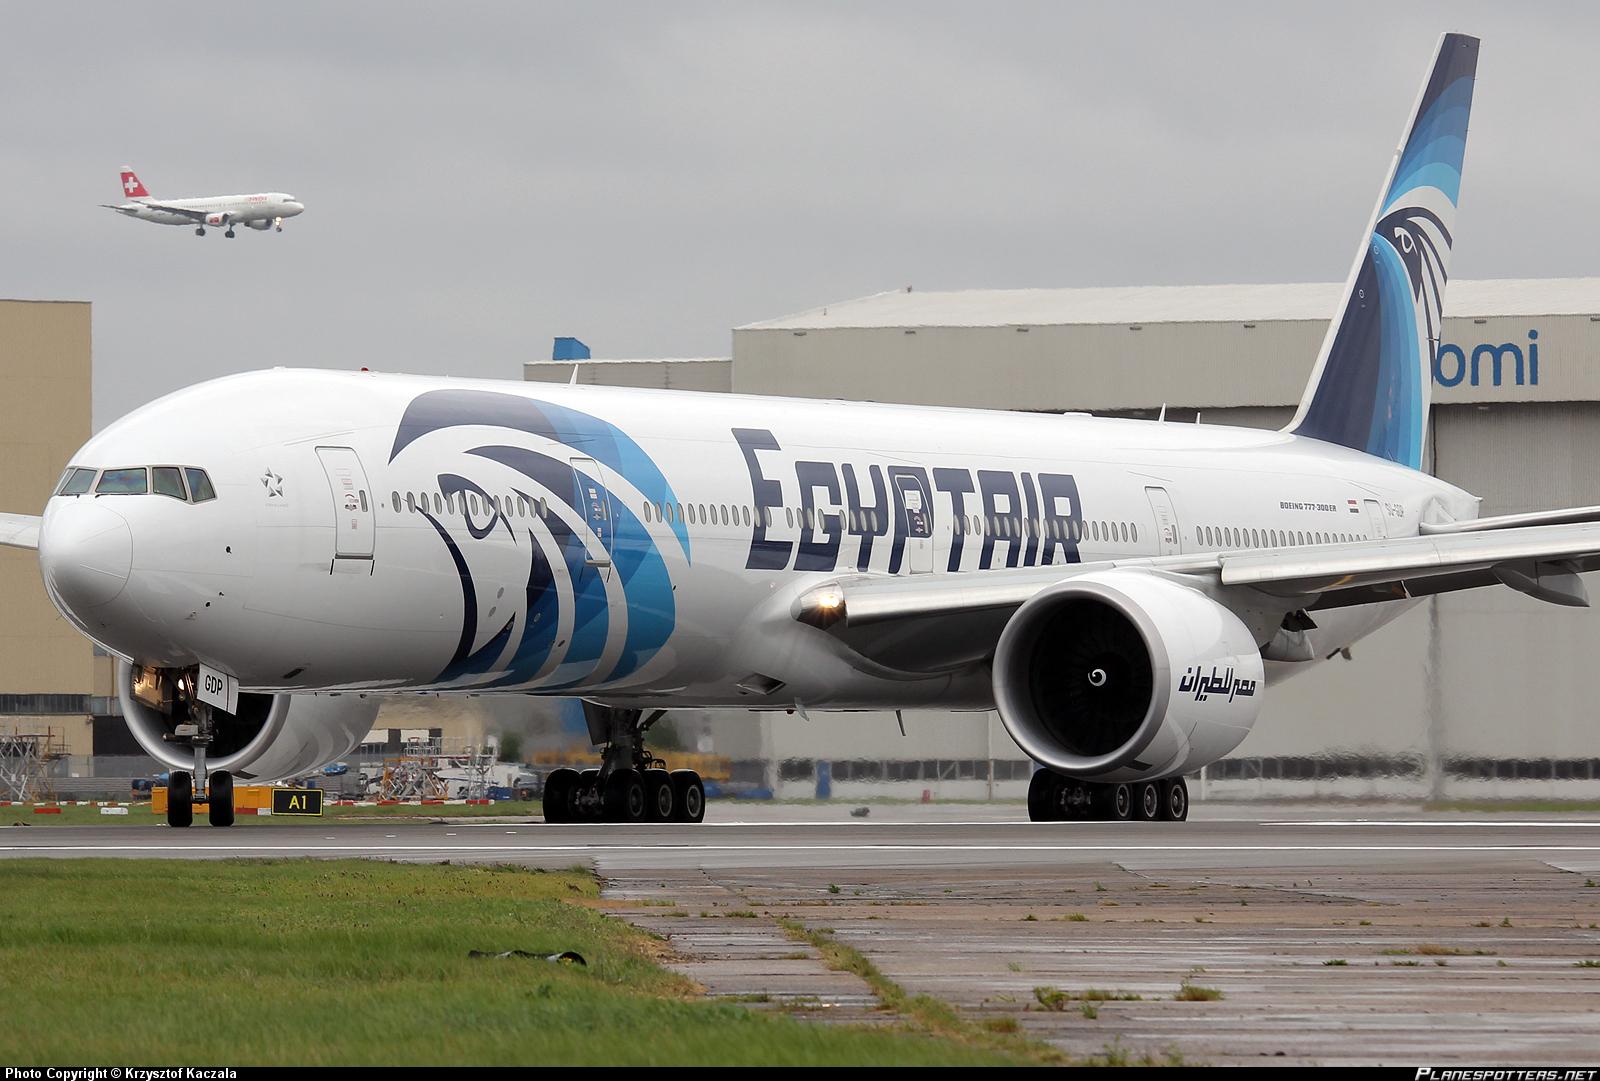 هبوط اضطراري لطائرة مصرية في أوزبكستان بسبب إنذار كاذب